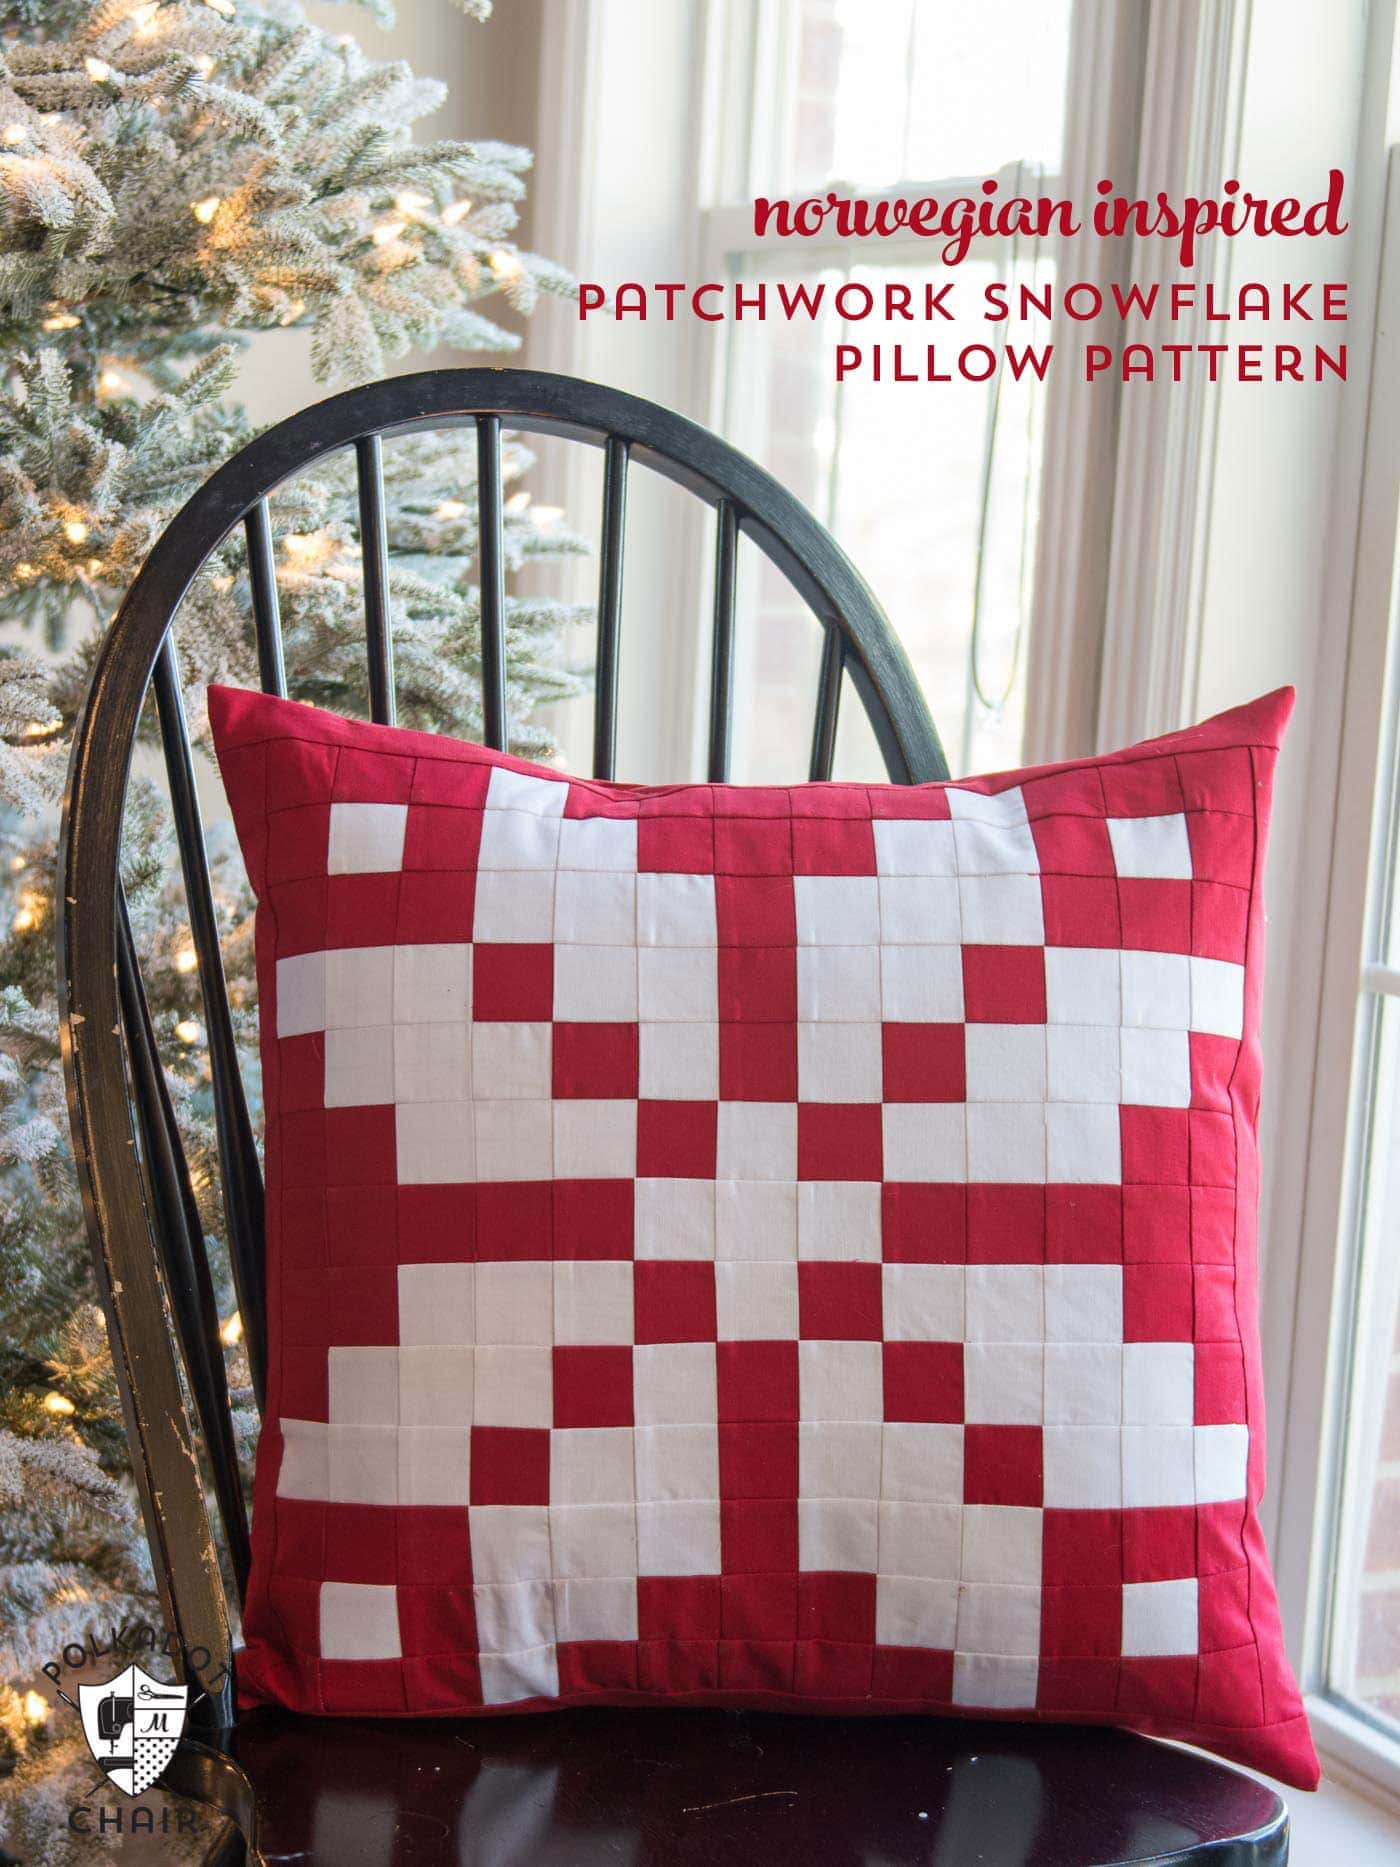 https://www.polkadotchair.com/wp-content/uploads/2016/11/norwegian-inspired-patchwork-pillow-pattern.jpg